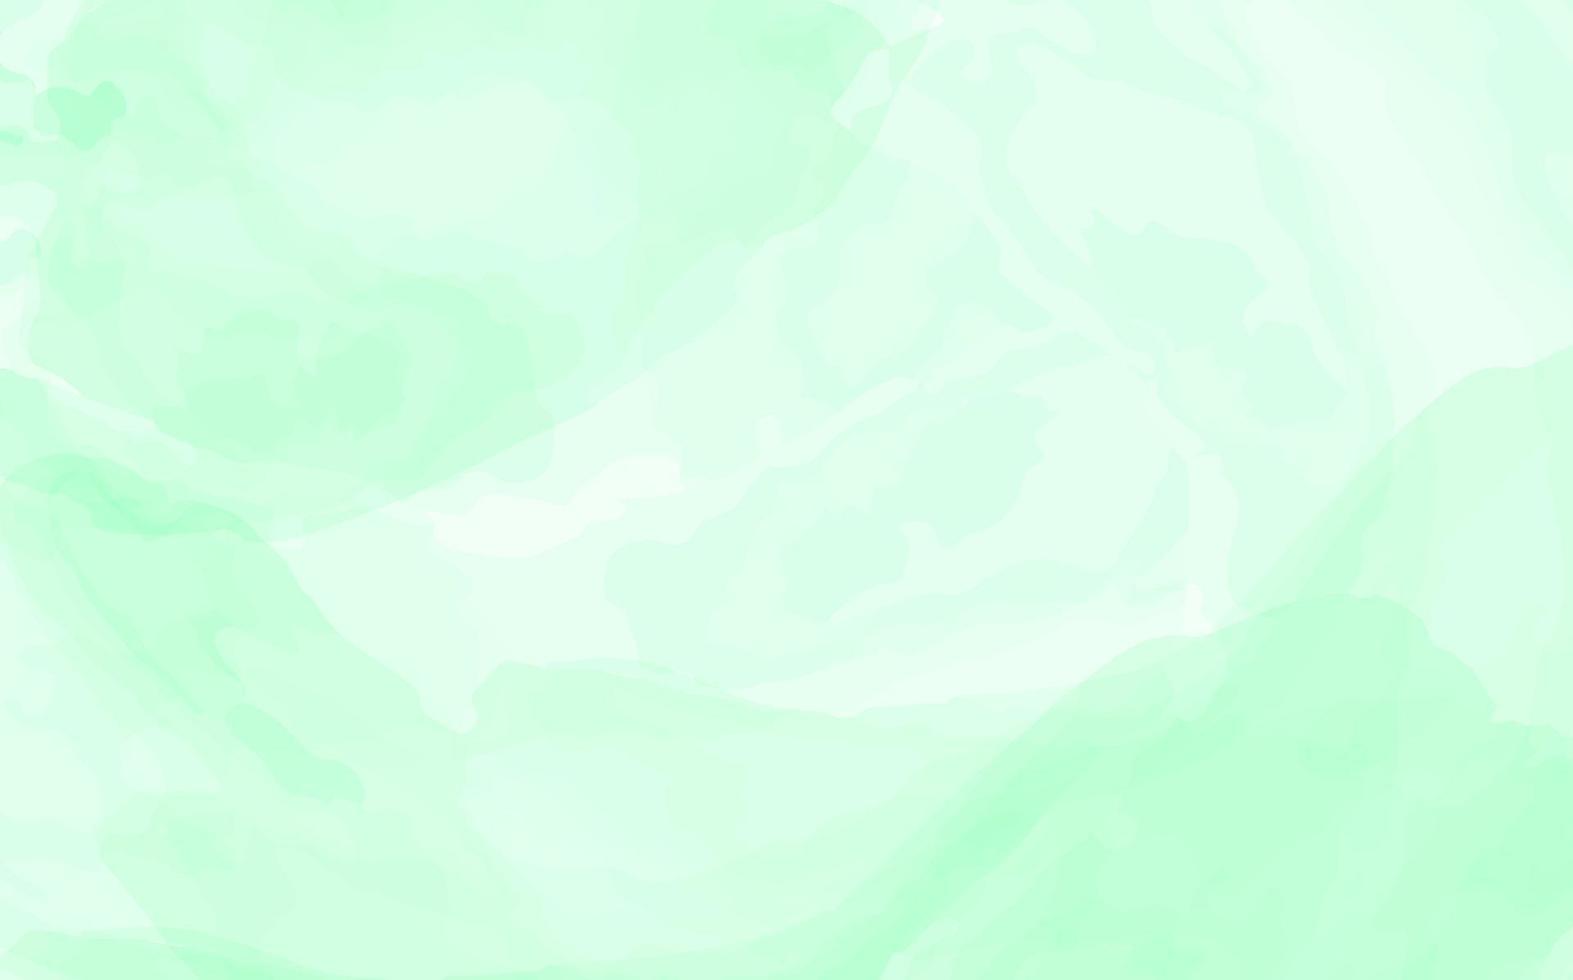 abstracte groene aquarel achtergrond vector